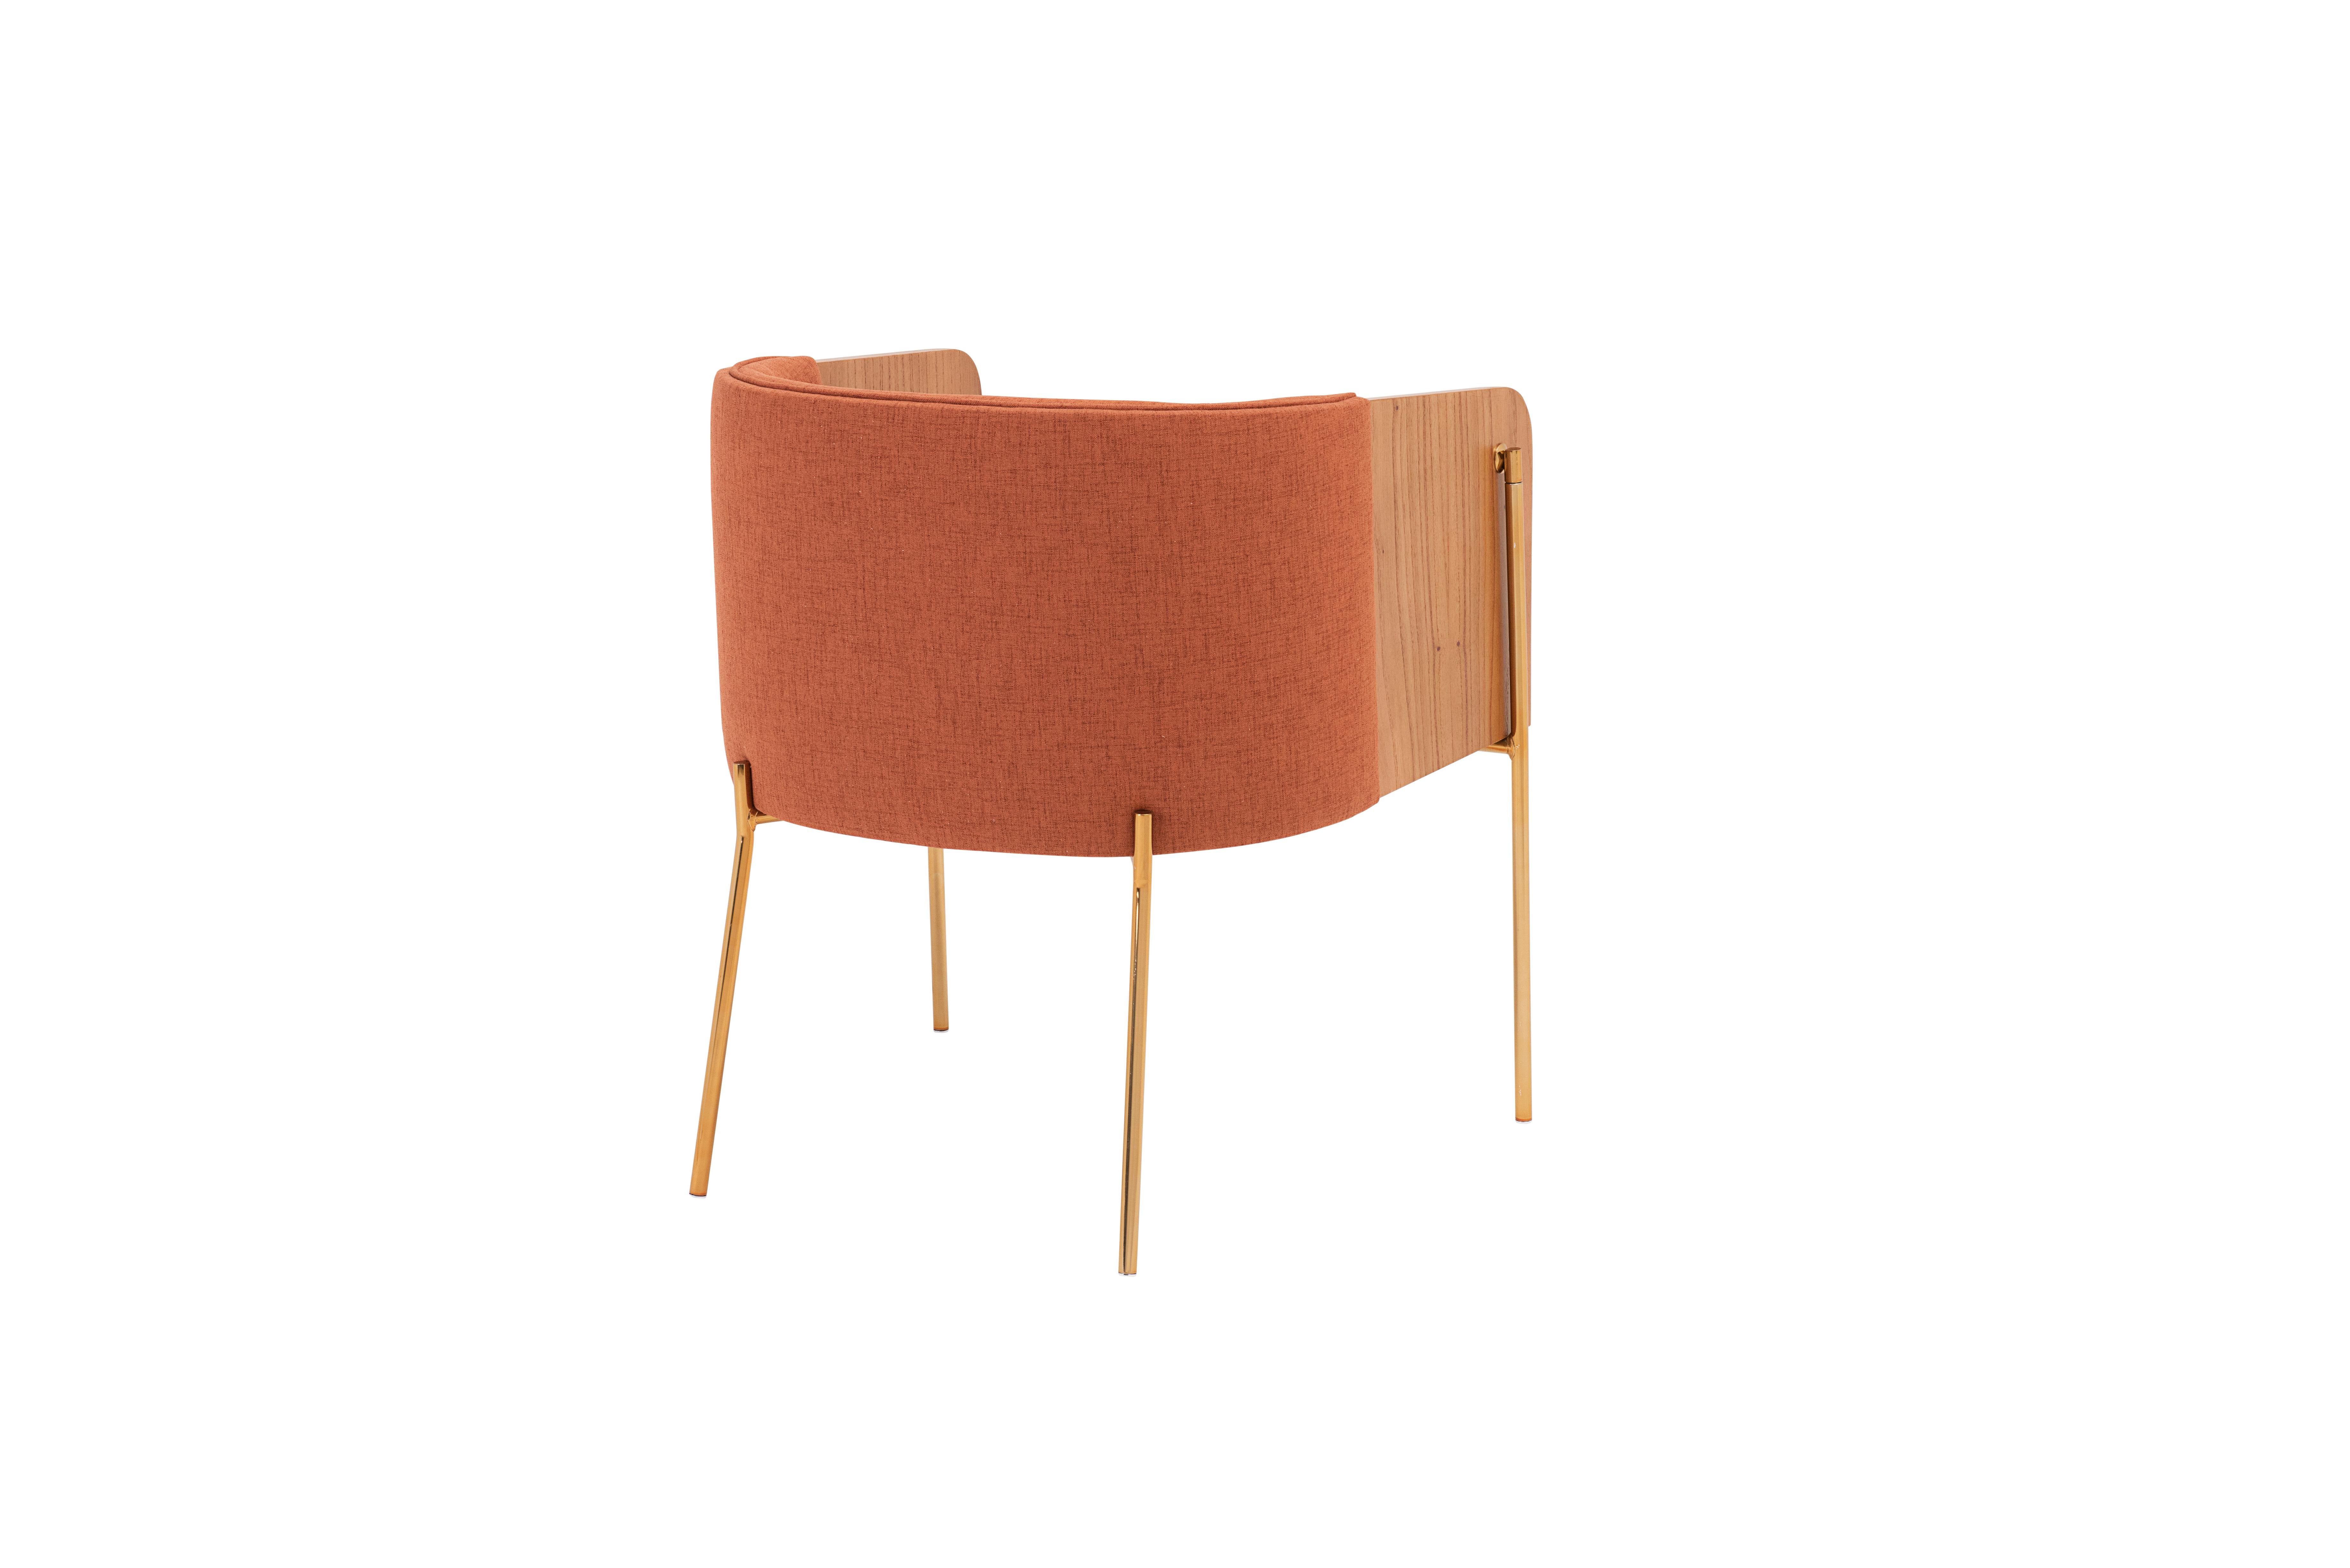 Der Sessel punto hat ein elegantes und vielseitiges Design. Leicht zu kombinieren, passt zu vielen Einrichtungsstilen.
Die Verarbeitung ist tadellos, mit einer harmonischen Mischung aus  Hochwertige MATERIALIEN: Curve Multilaminat-Holzrückenlehne,